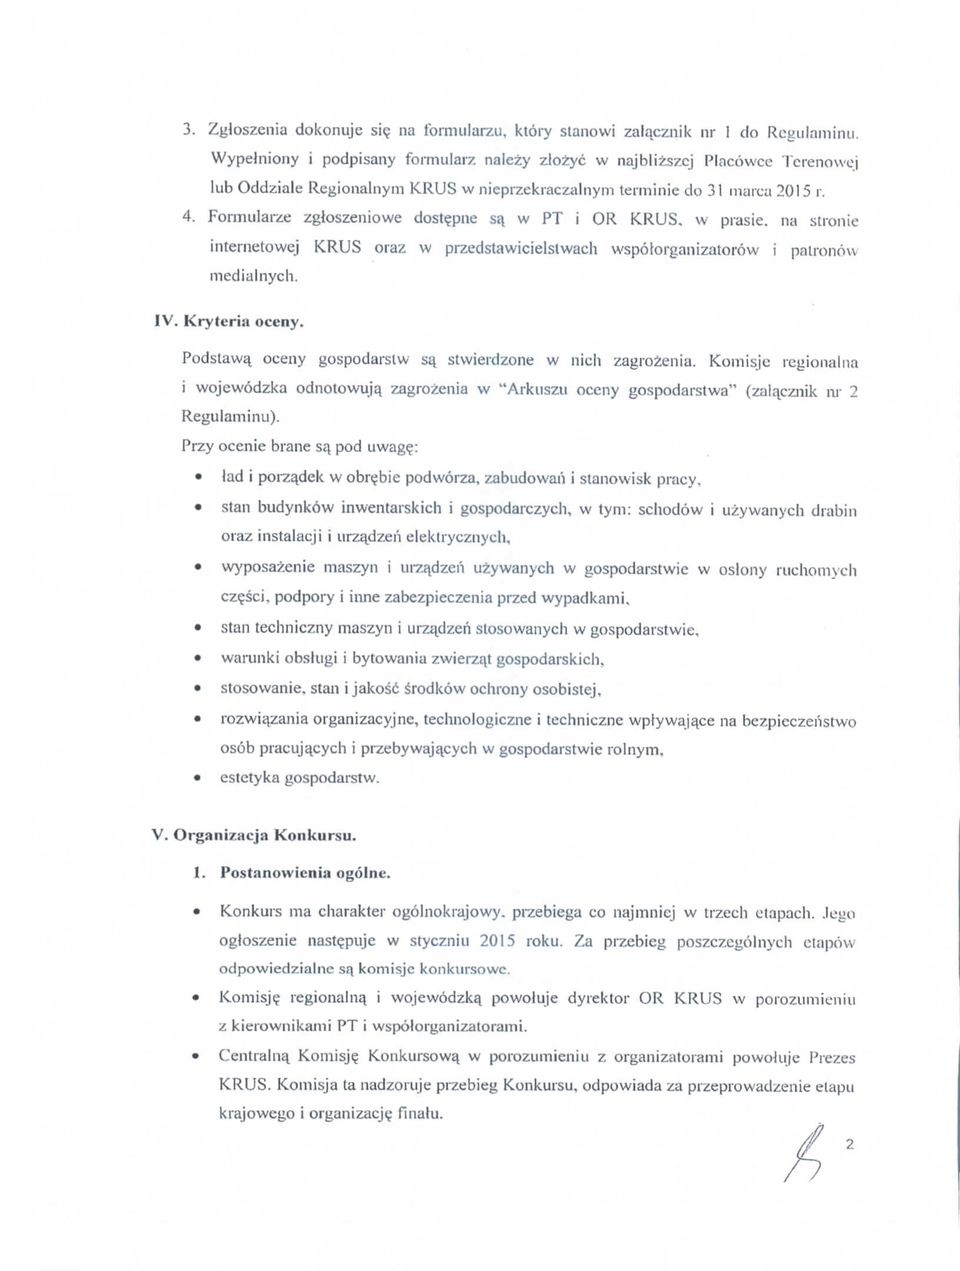 Formularze zgloszeniowe dostejuie sa_ w PT i OR KRUS, w prasi na stronie internetowej KRUS oraz w przedstawicielslwach wspotorganizatorow i palronow medlalnych. IV. Kryteria oceny.